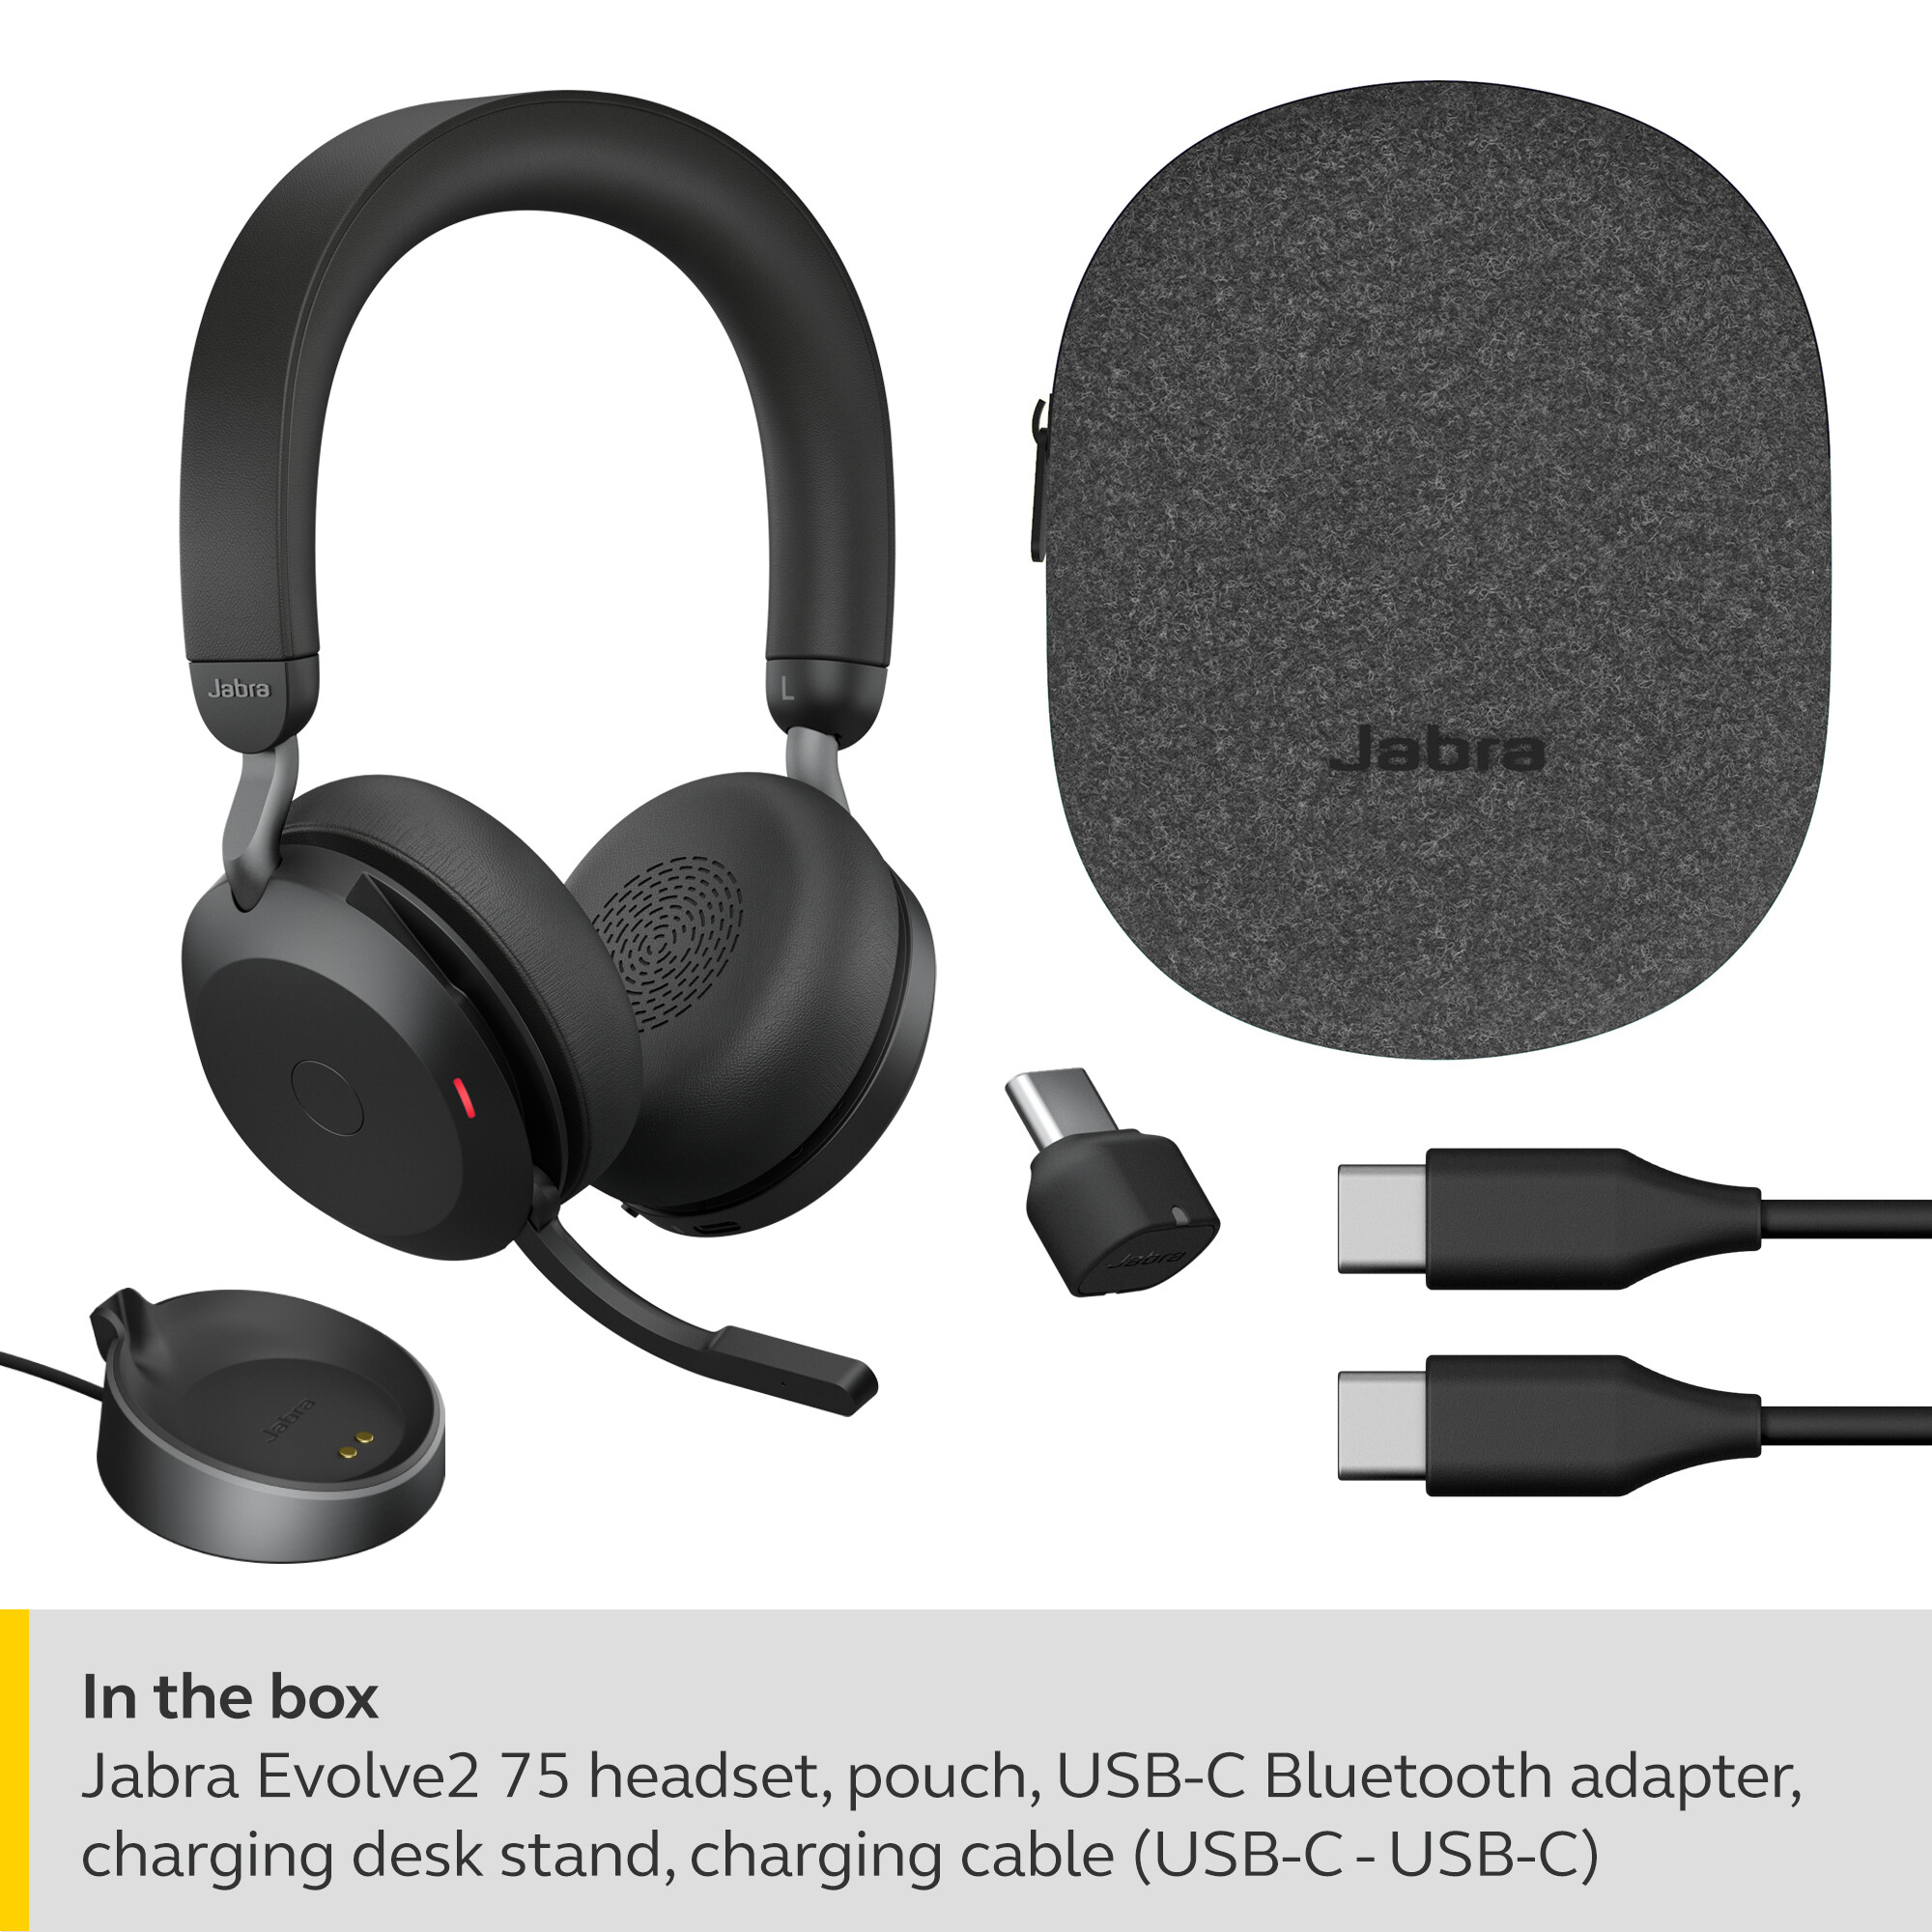 Jabra-Evolve2-75-draadloos-Stereo-Headset-voor-UC-met-Desk-Stand-Bluetooth-USB-C-aansluiting-zwart